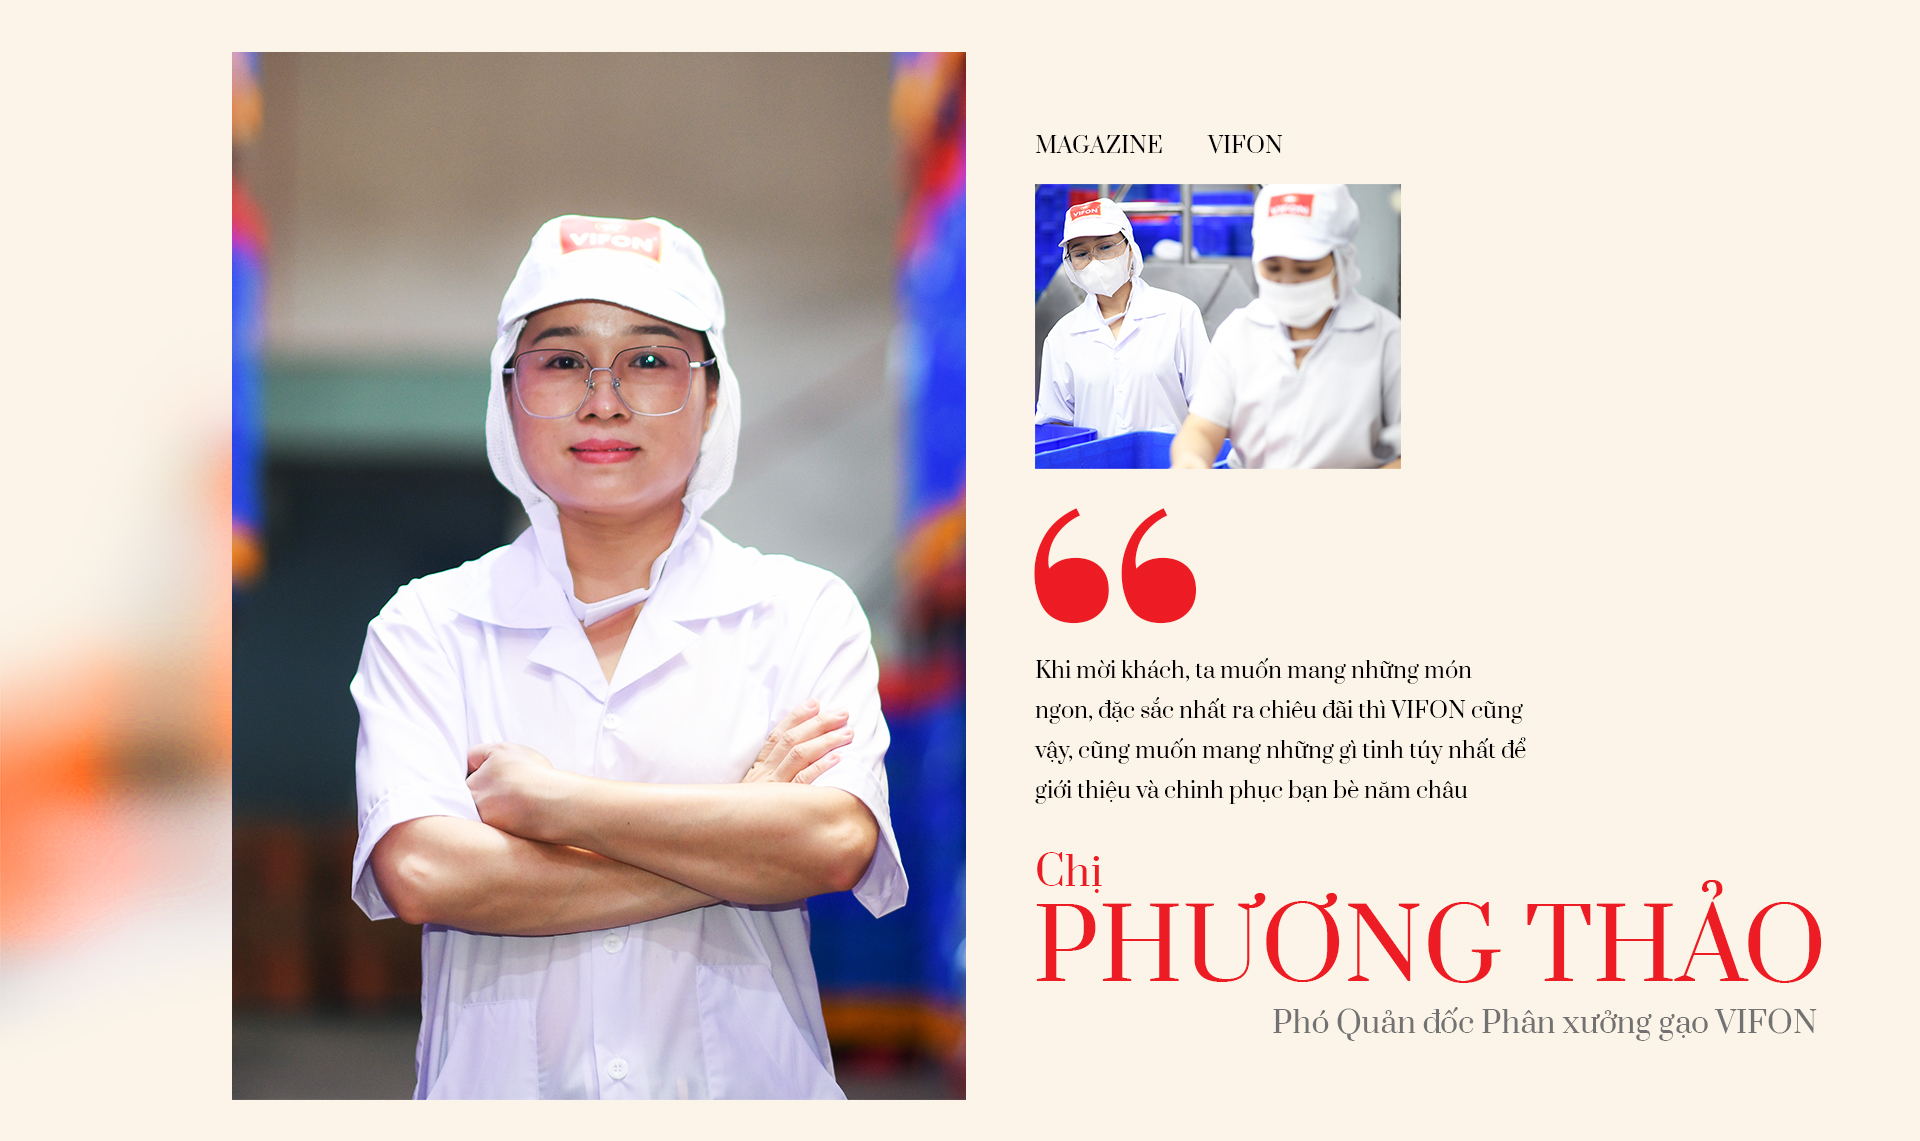 VIFON 60 năm - hành trình mang tinh hoa ẩm thực Việt vươn xa thế giới - Ảnh 2.